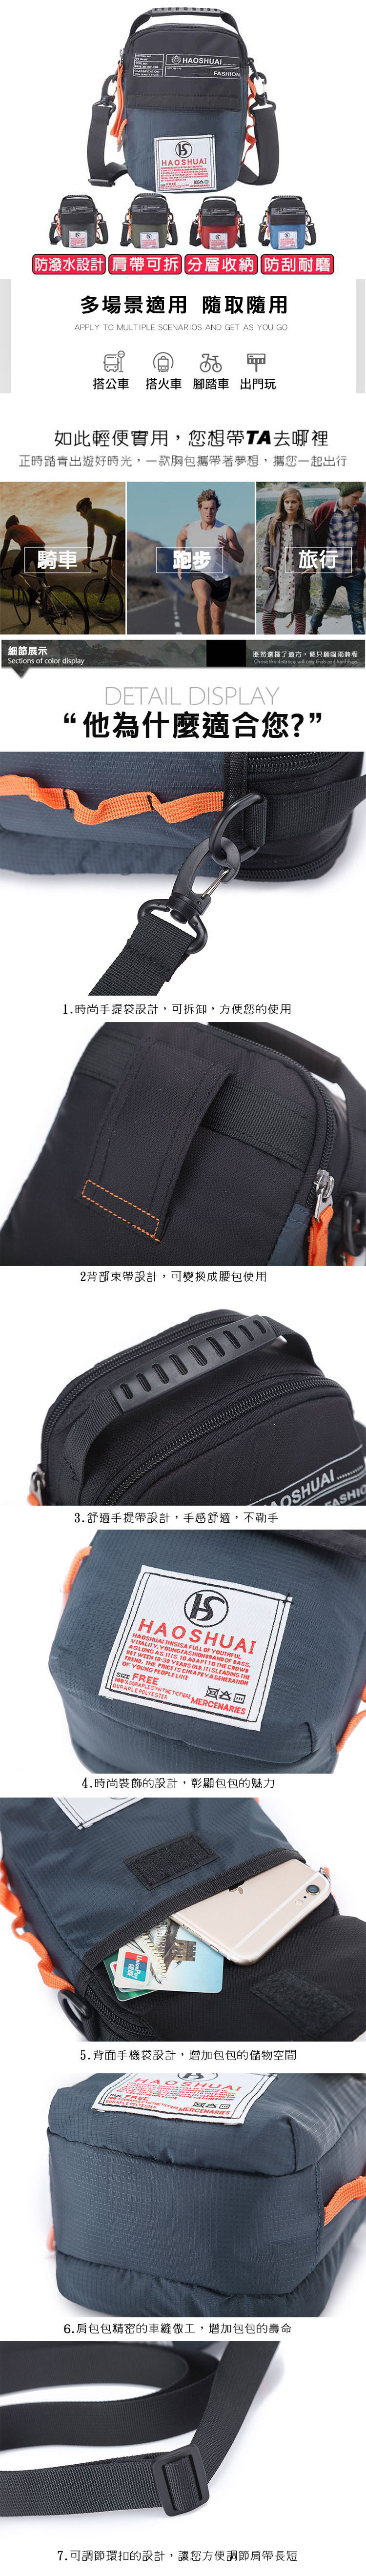 韓系旅遊防潑水多格層戶外休閒肩背包 斜背包 小包大容量 5色